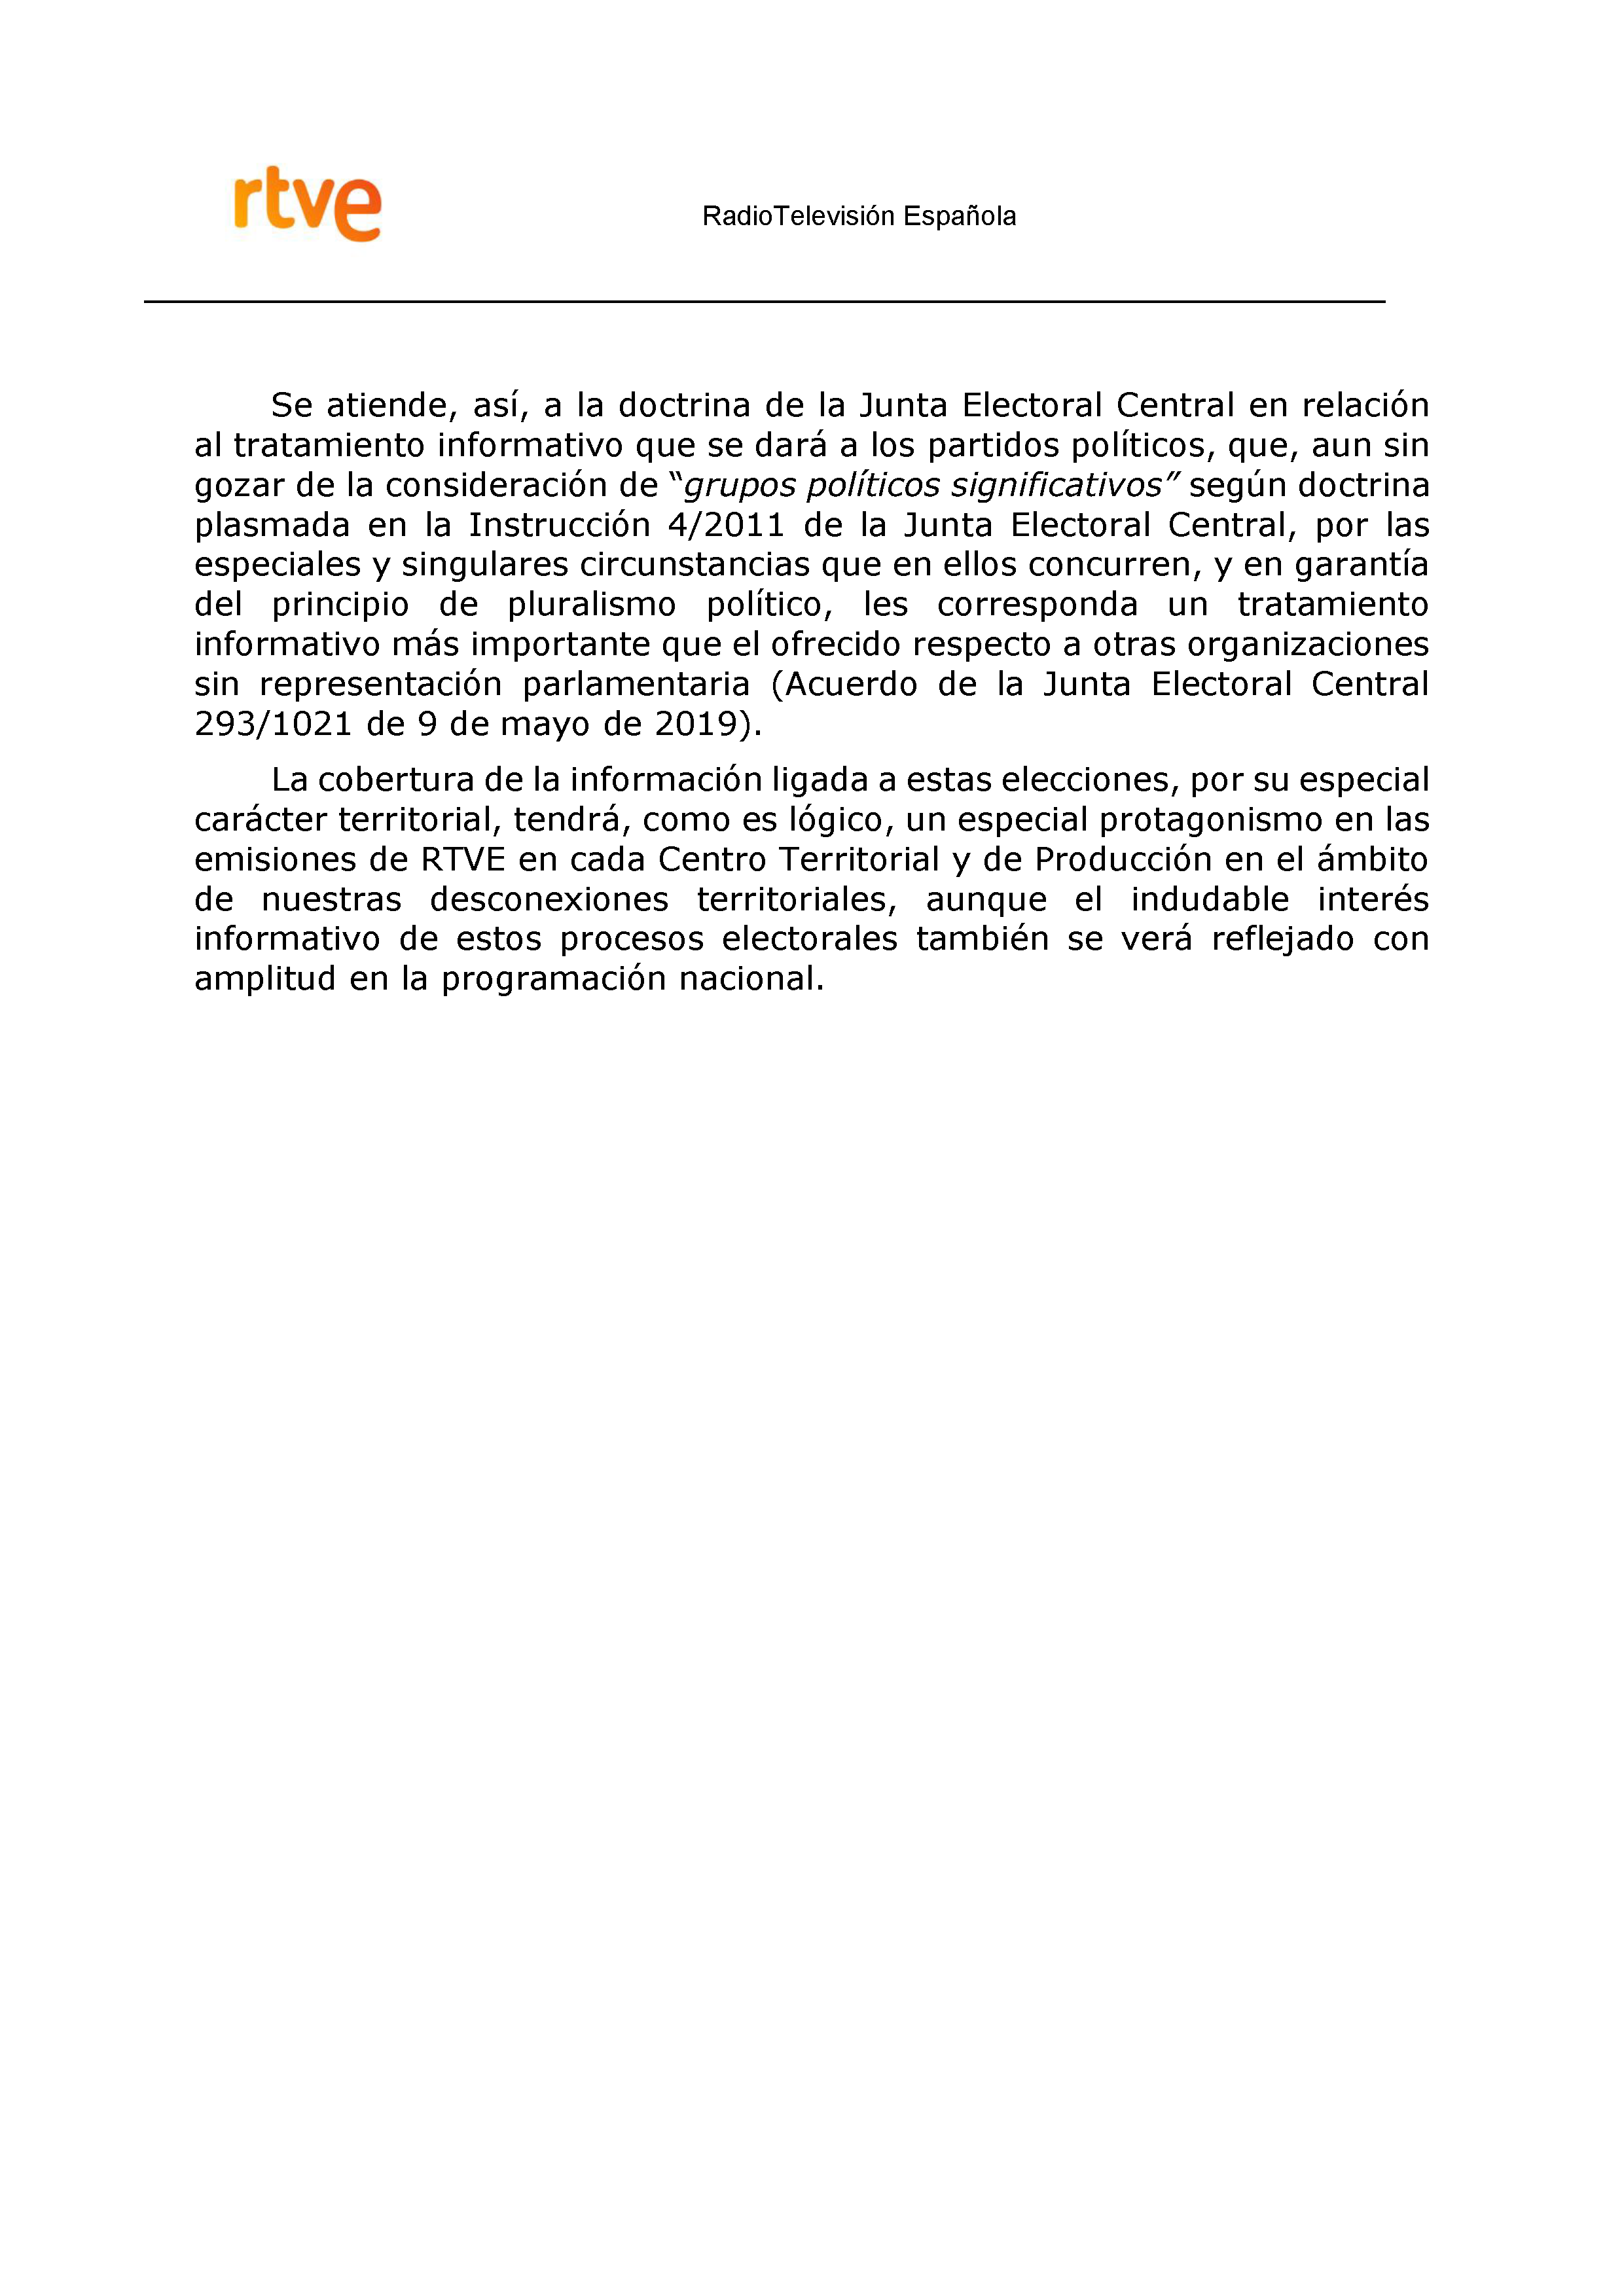 PLAN DE COBERTURA INFORMATIVA RTVE en Extremadura ELECCIONES MUNICIPALES Y AUTONÓMICAS Pag 4